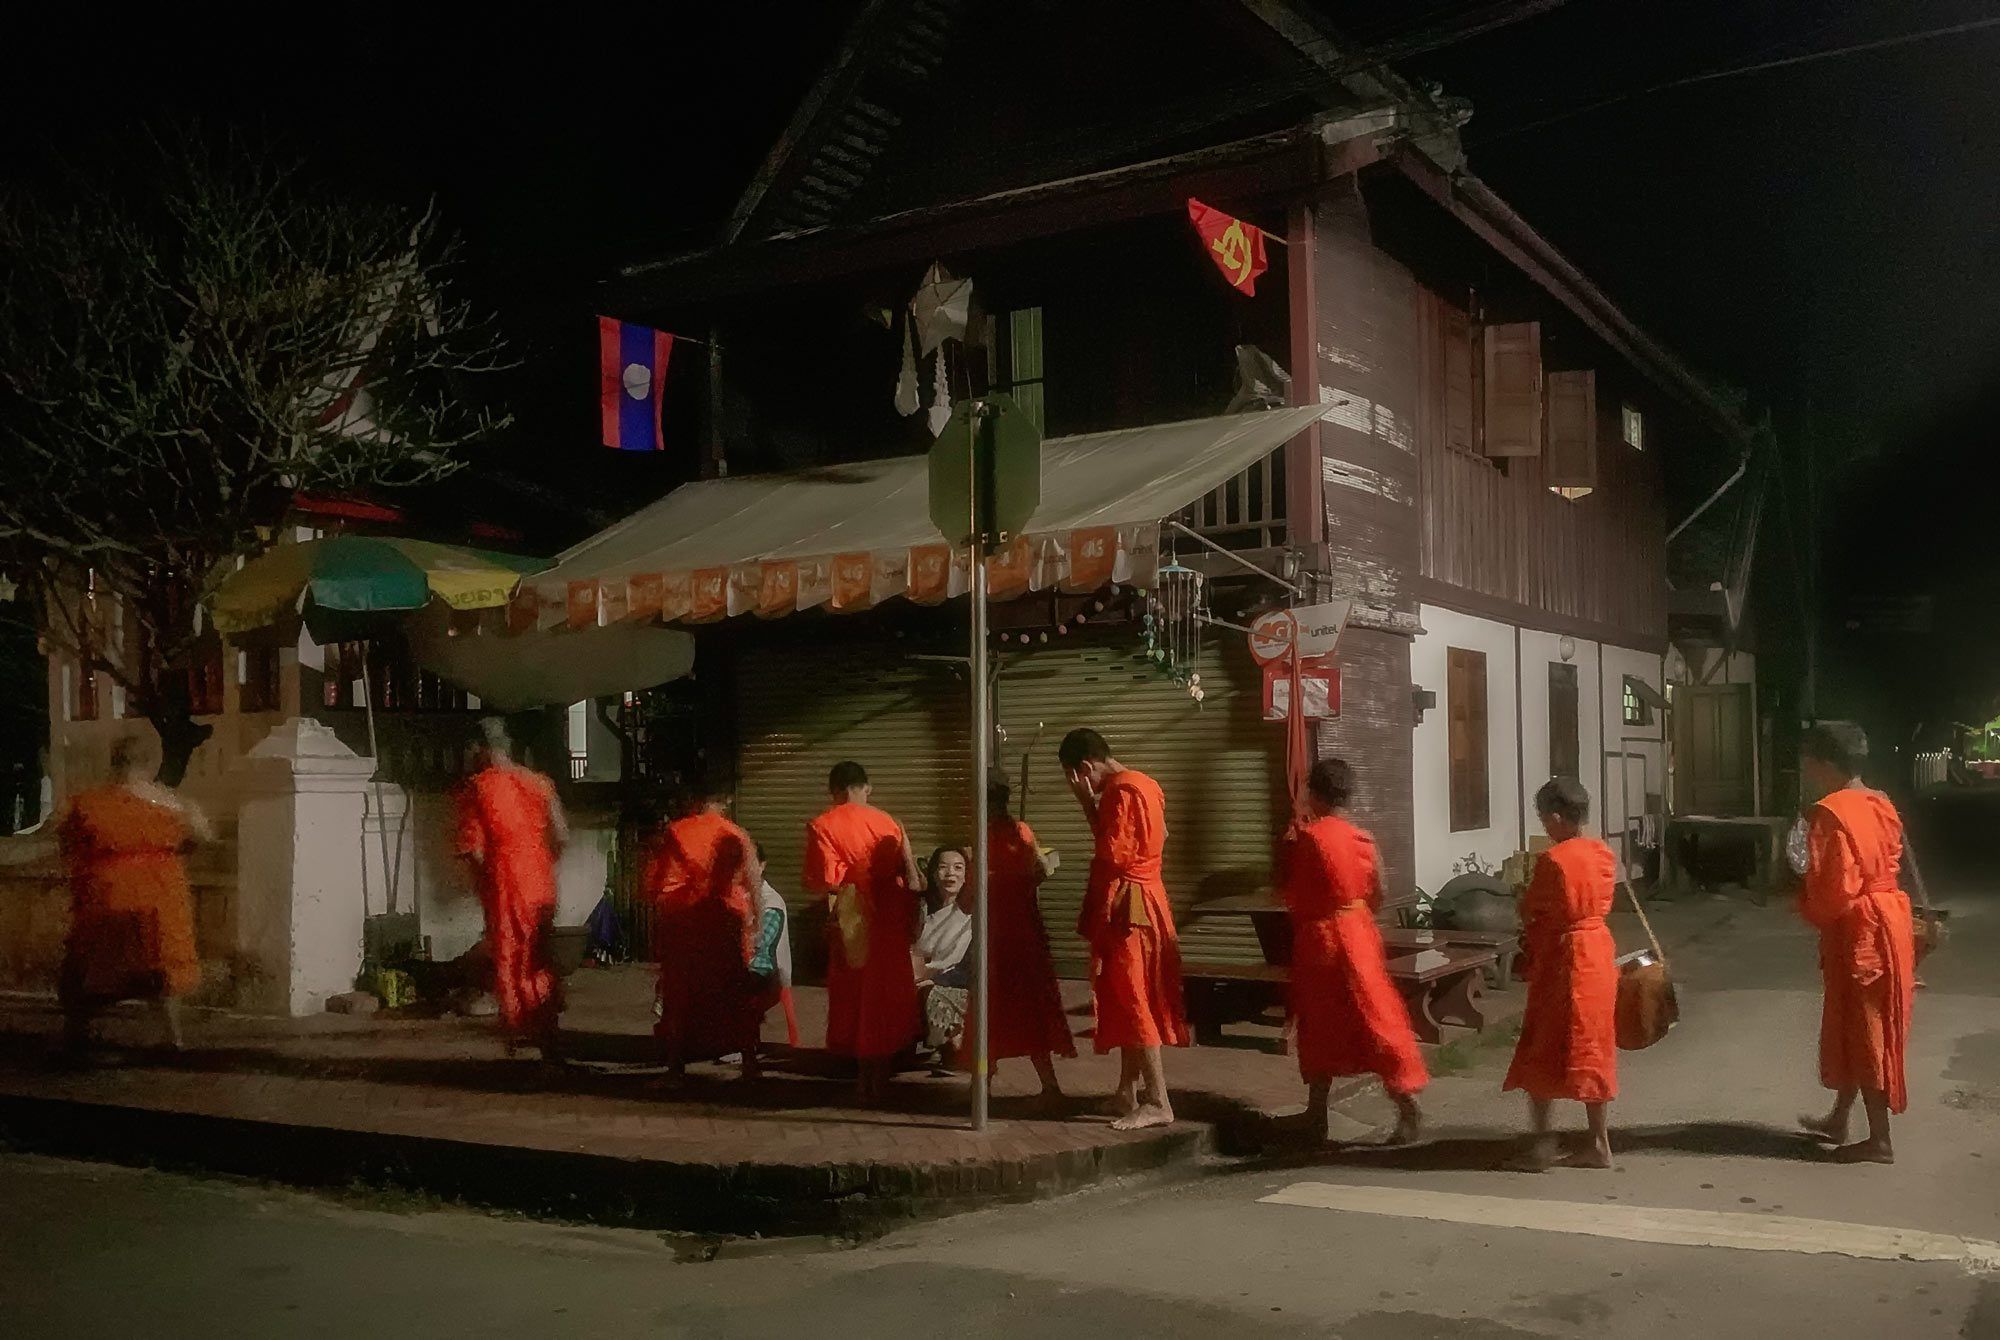 Mönche beim Almosengang in Luang Prabang